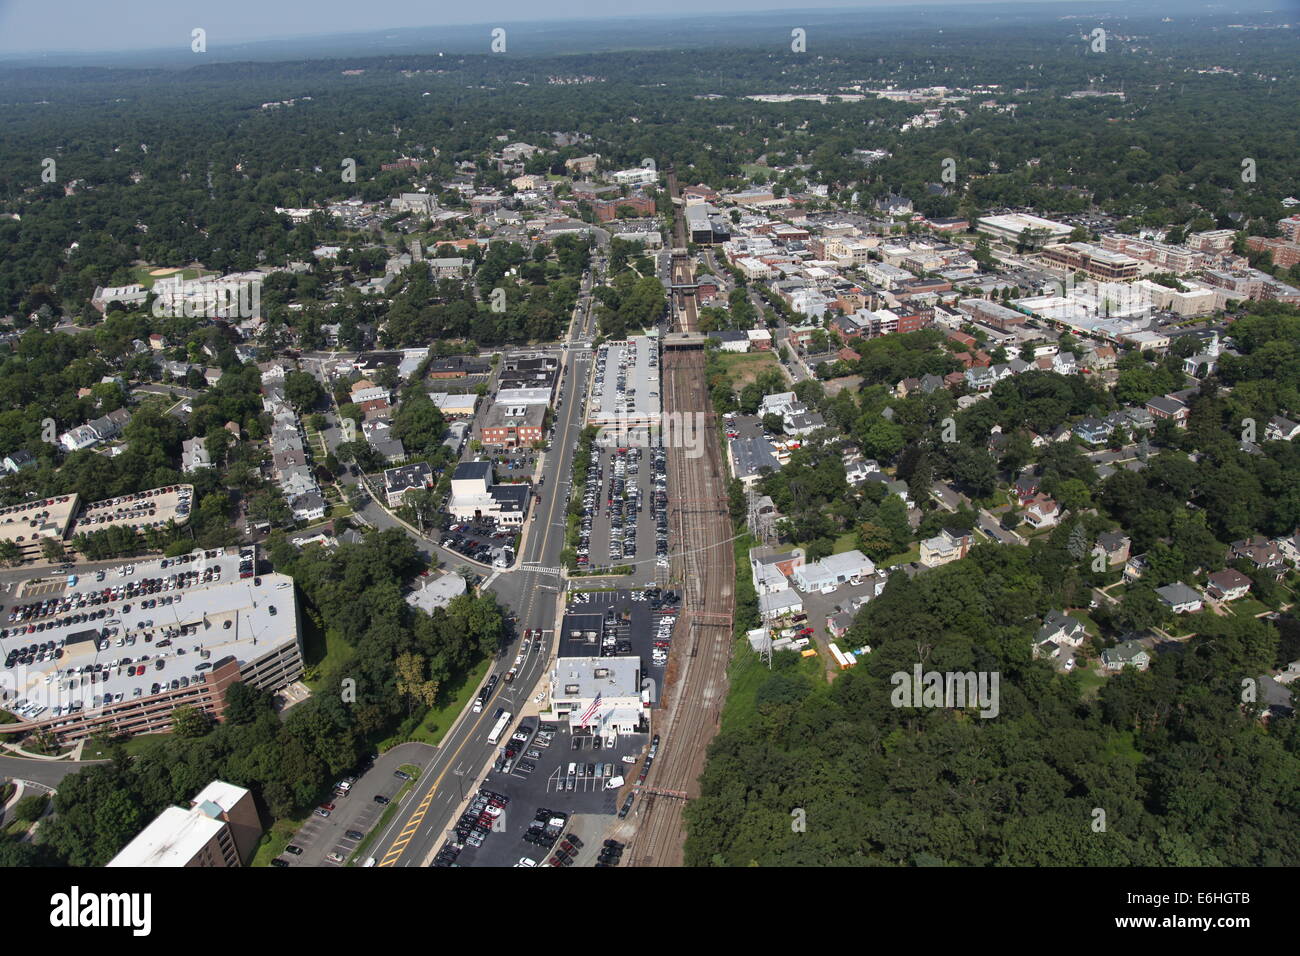 Vue aérienne de la ville de Summit, New Jersey Banque D'Images